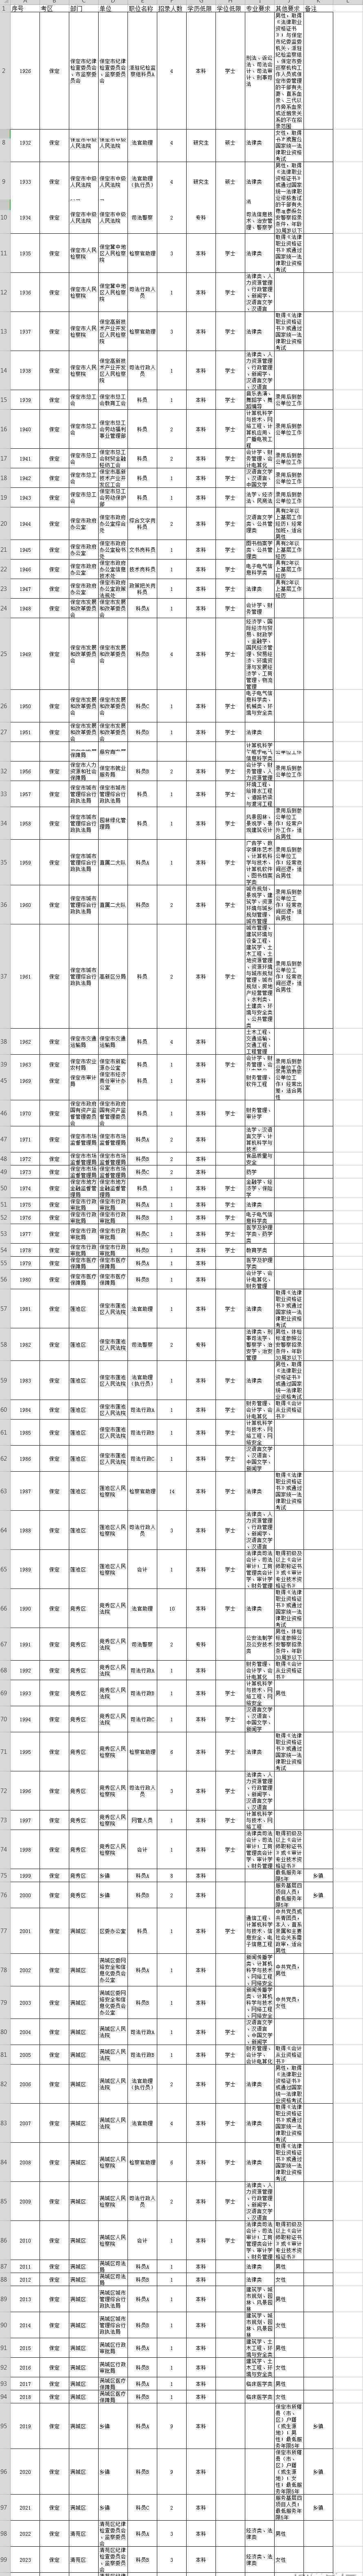 河北省公务员考试职位表 2019年河北公务员考试职位表